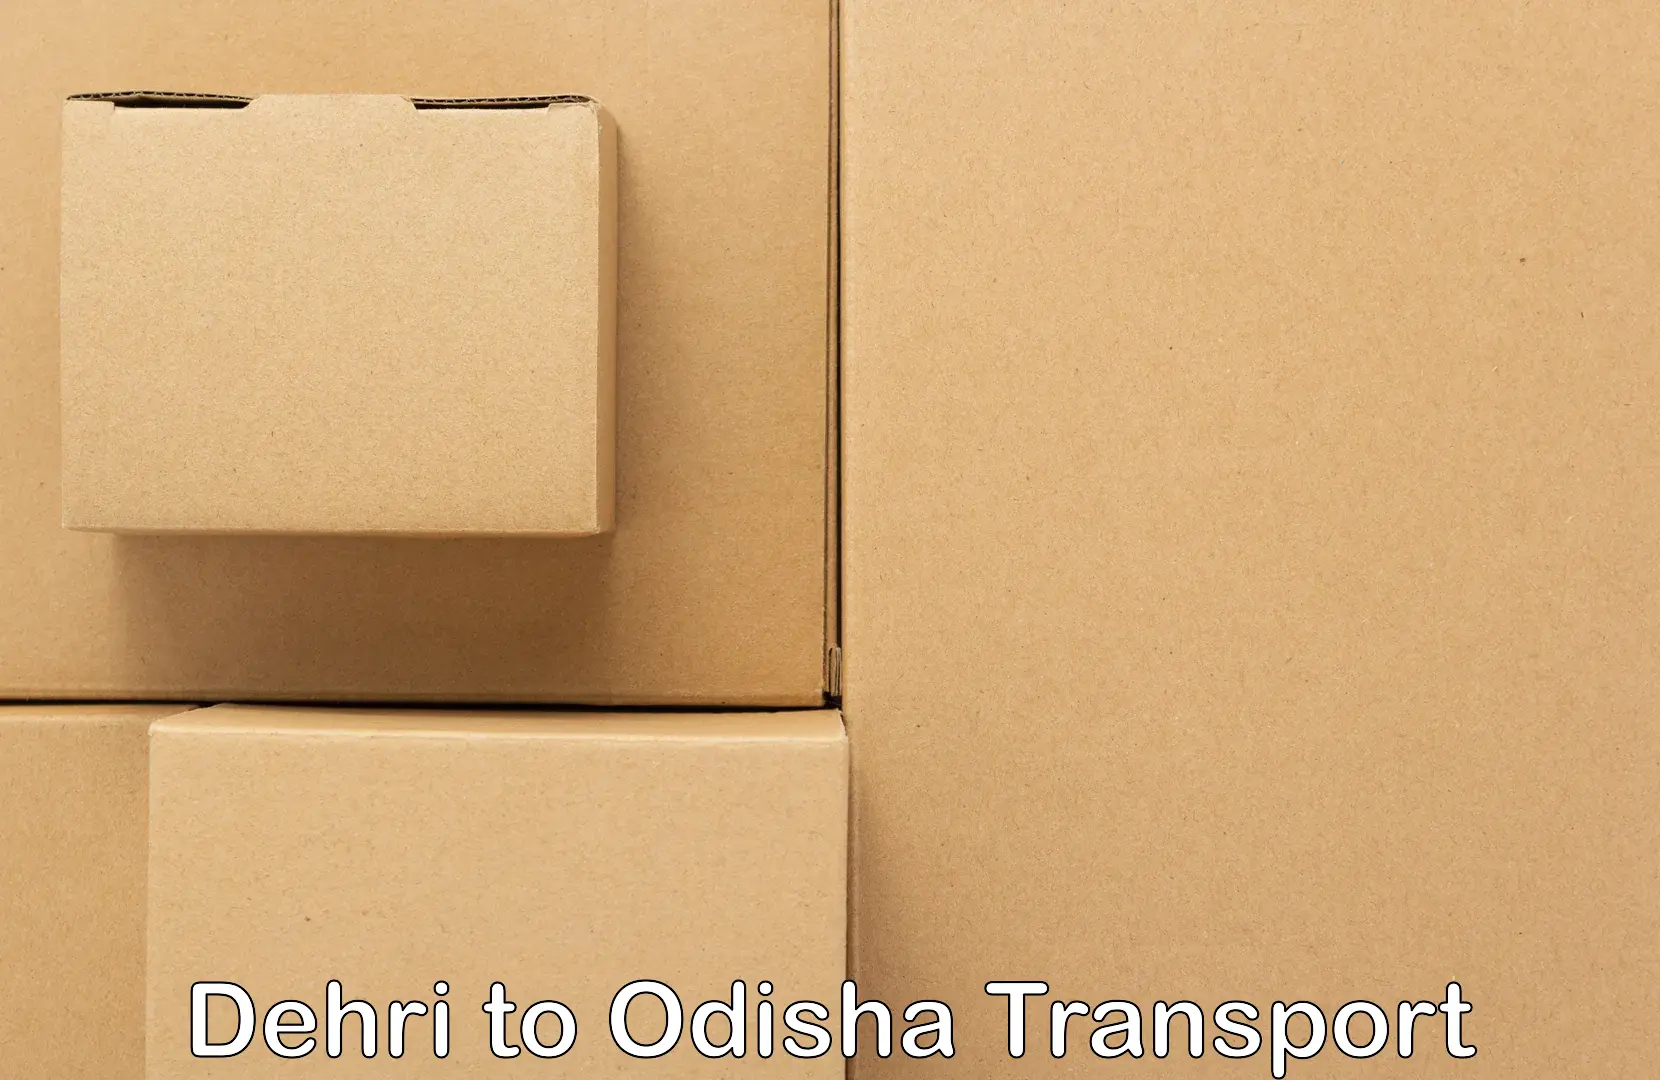 Nearest transport service Dehri to Titilagarh